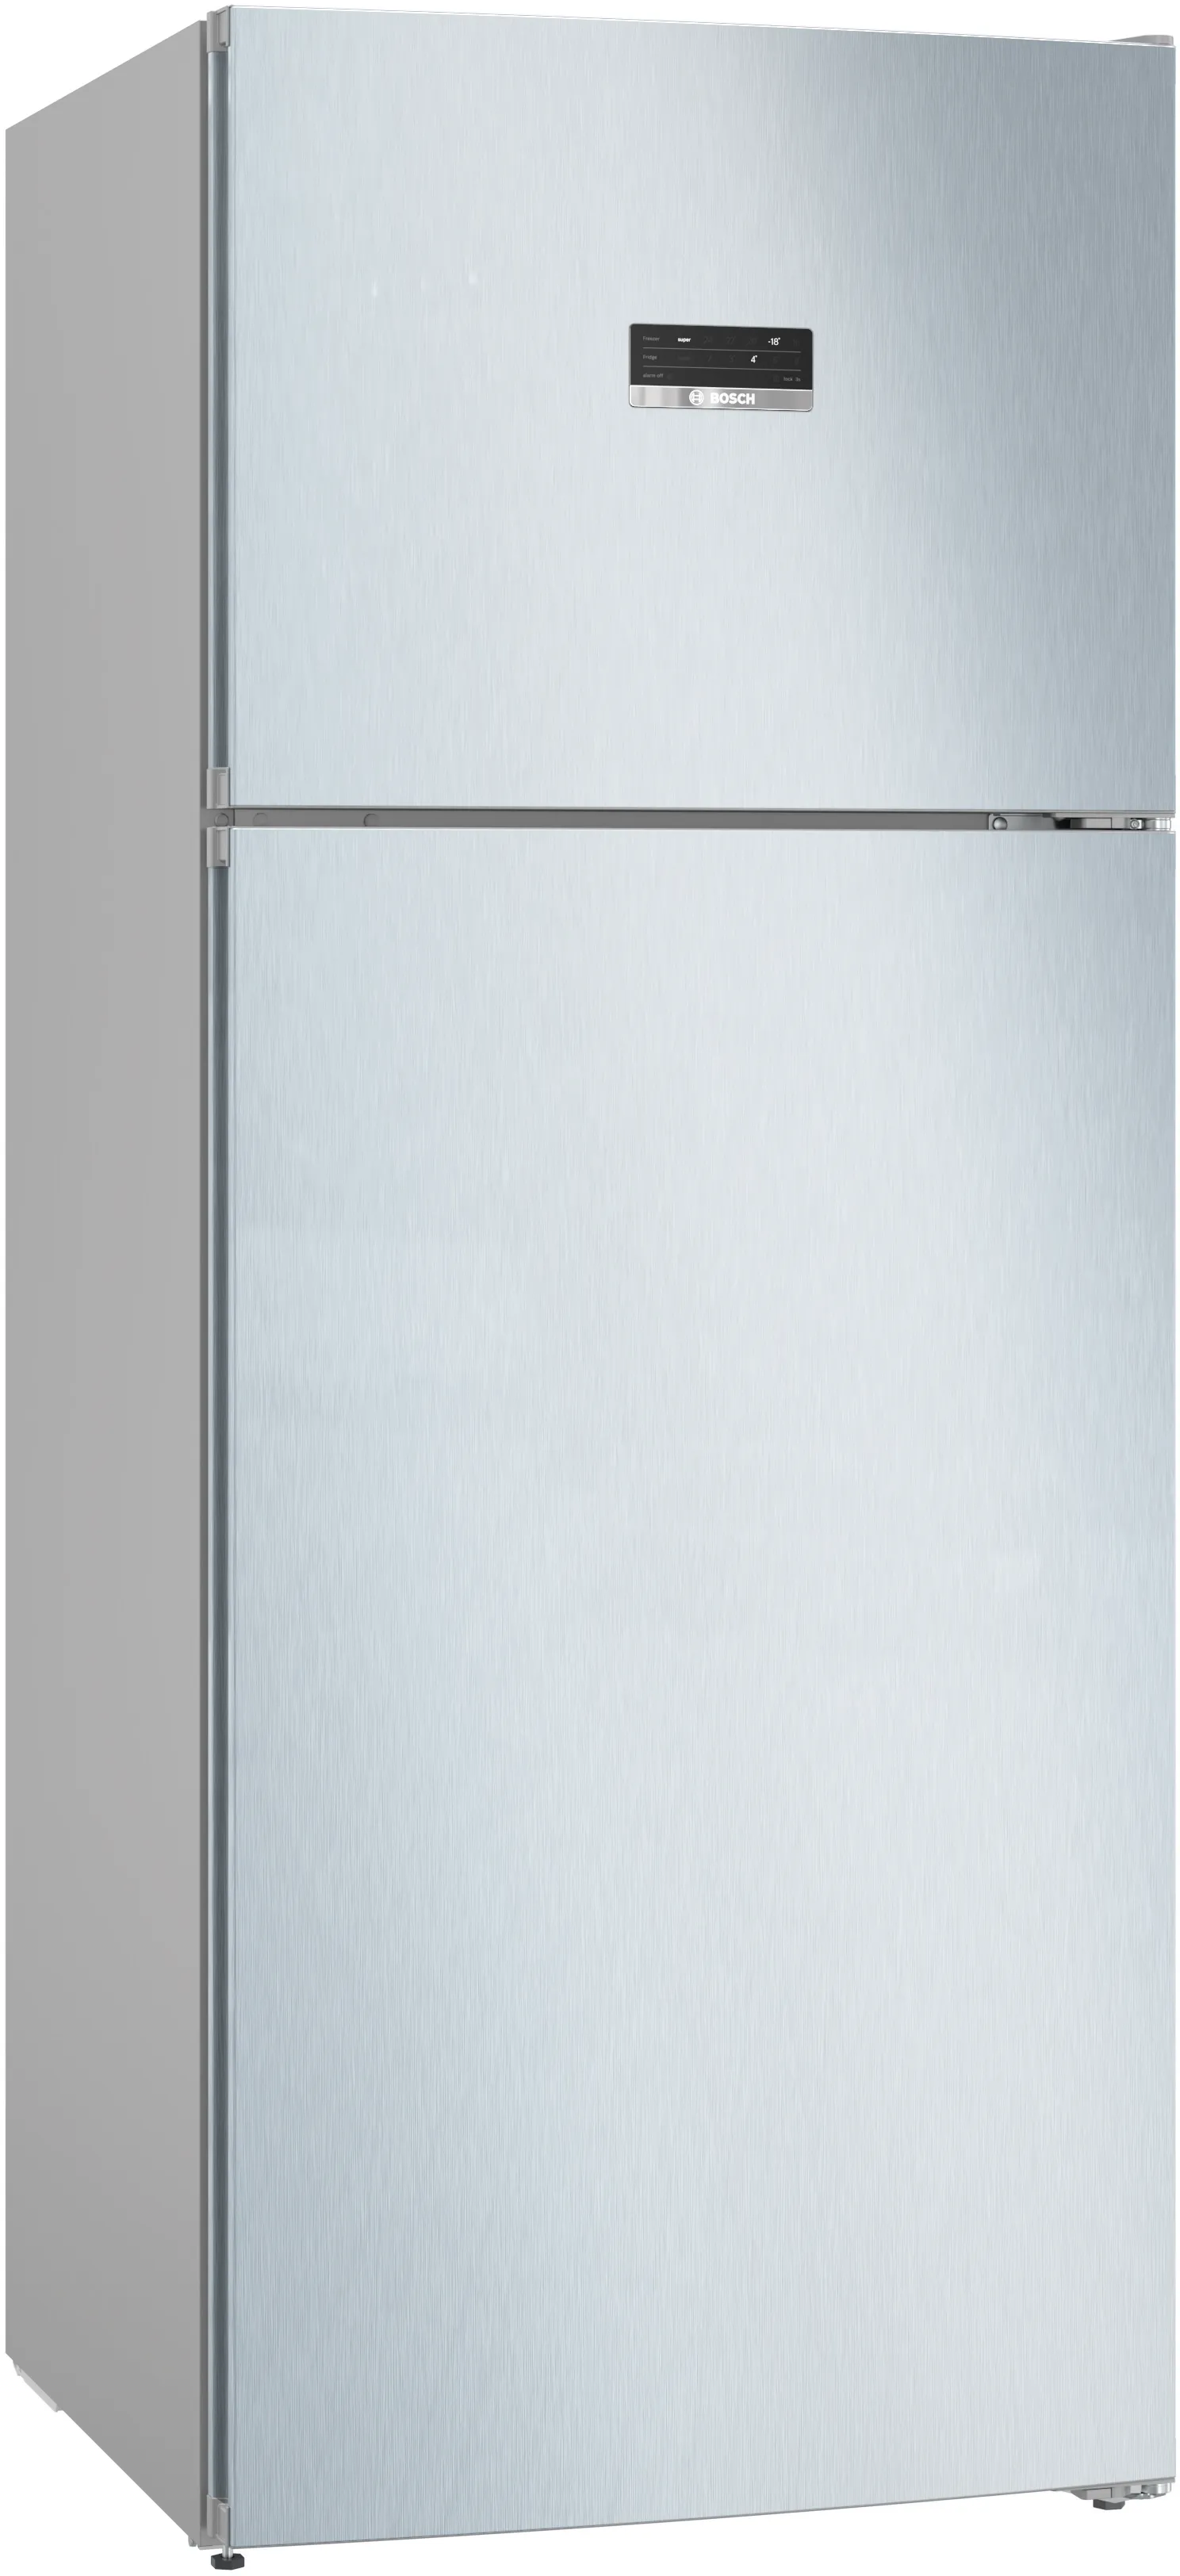 Серия 4 Отдельностоящий холодильник с верхней морозильной камерой 186 x 75 cm Имитация нерж. стали 